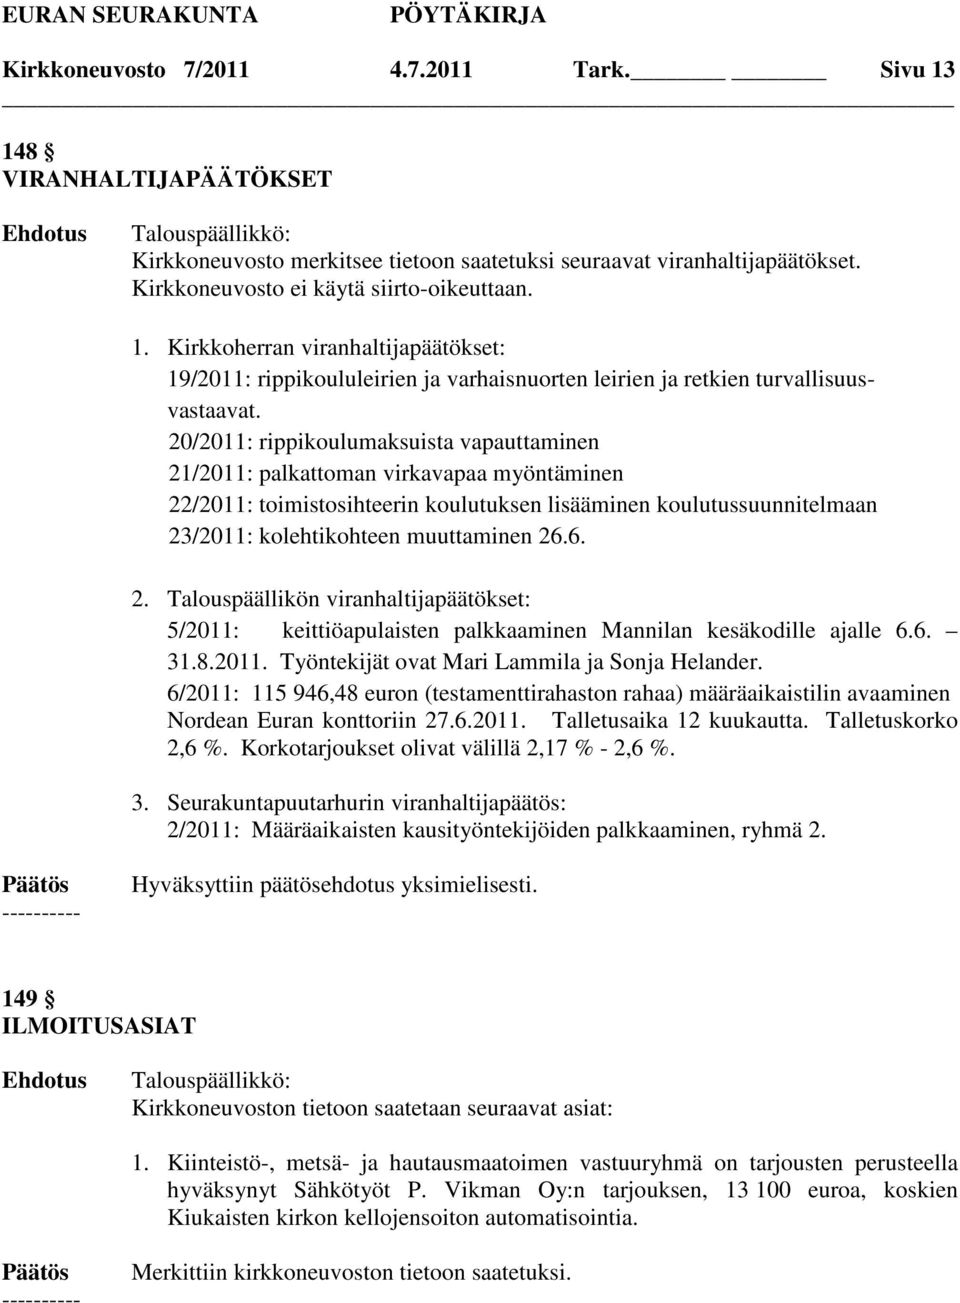 6. 2. Talouspäällikön viranhaltijapäätökset: 5/2011: keittiöapulaisten palkkaaminen Mannilan kesäkodille ajalle 6.6. 31.8.2011. Työntekijät ovat Mari Lammila ja Sonja Helander.